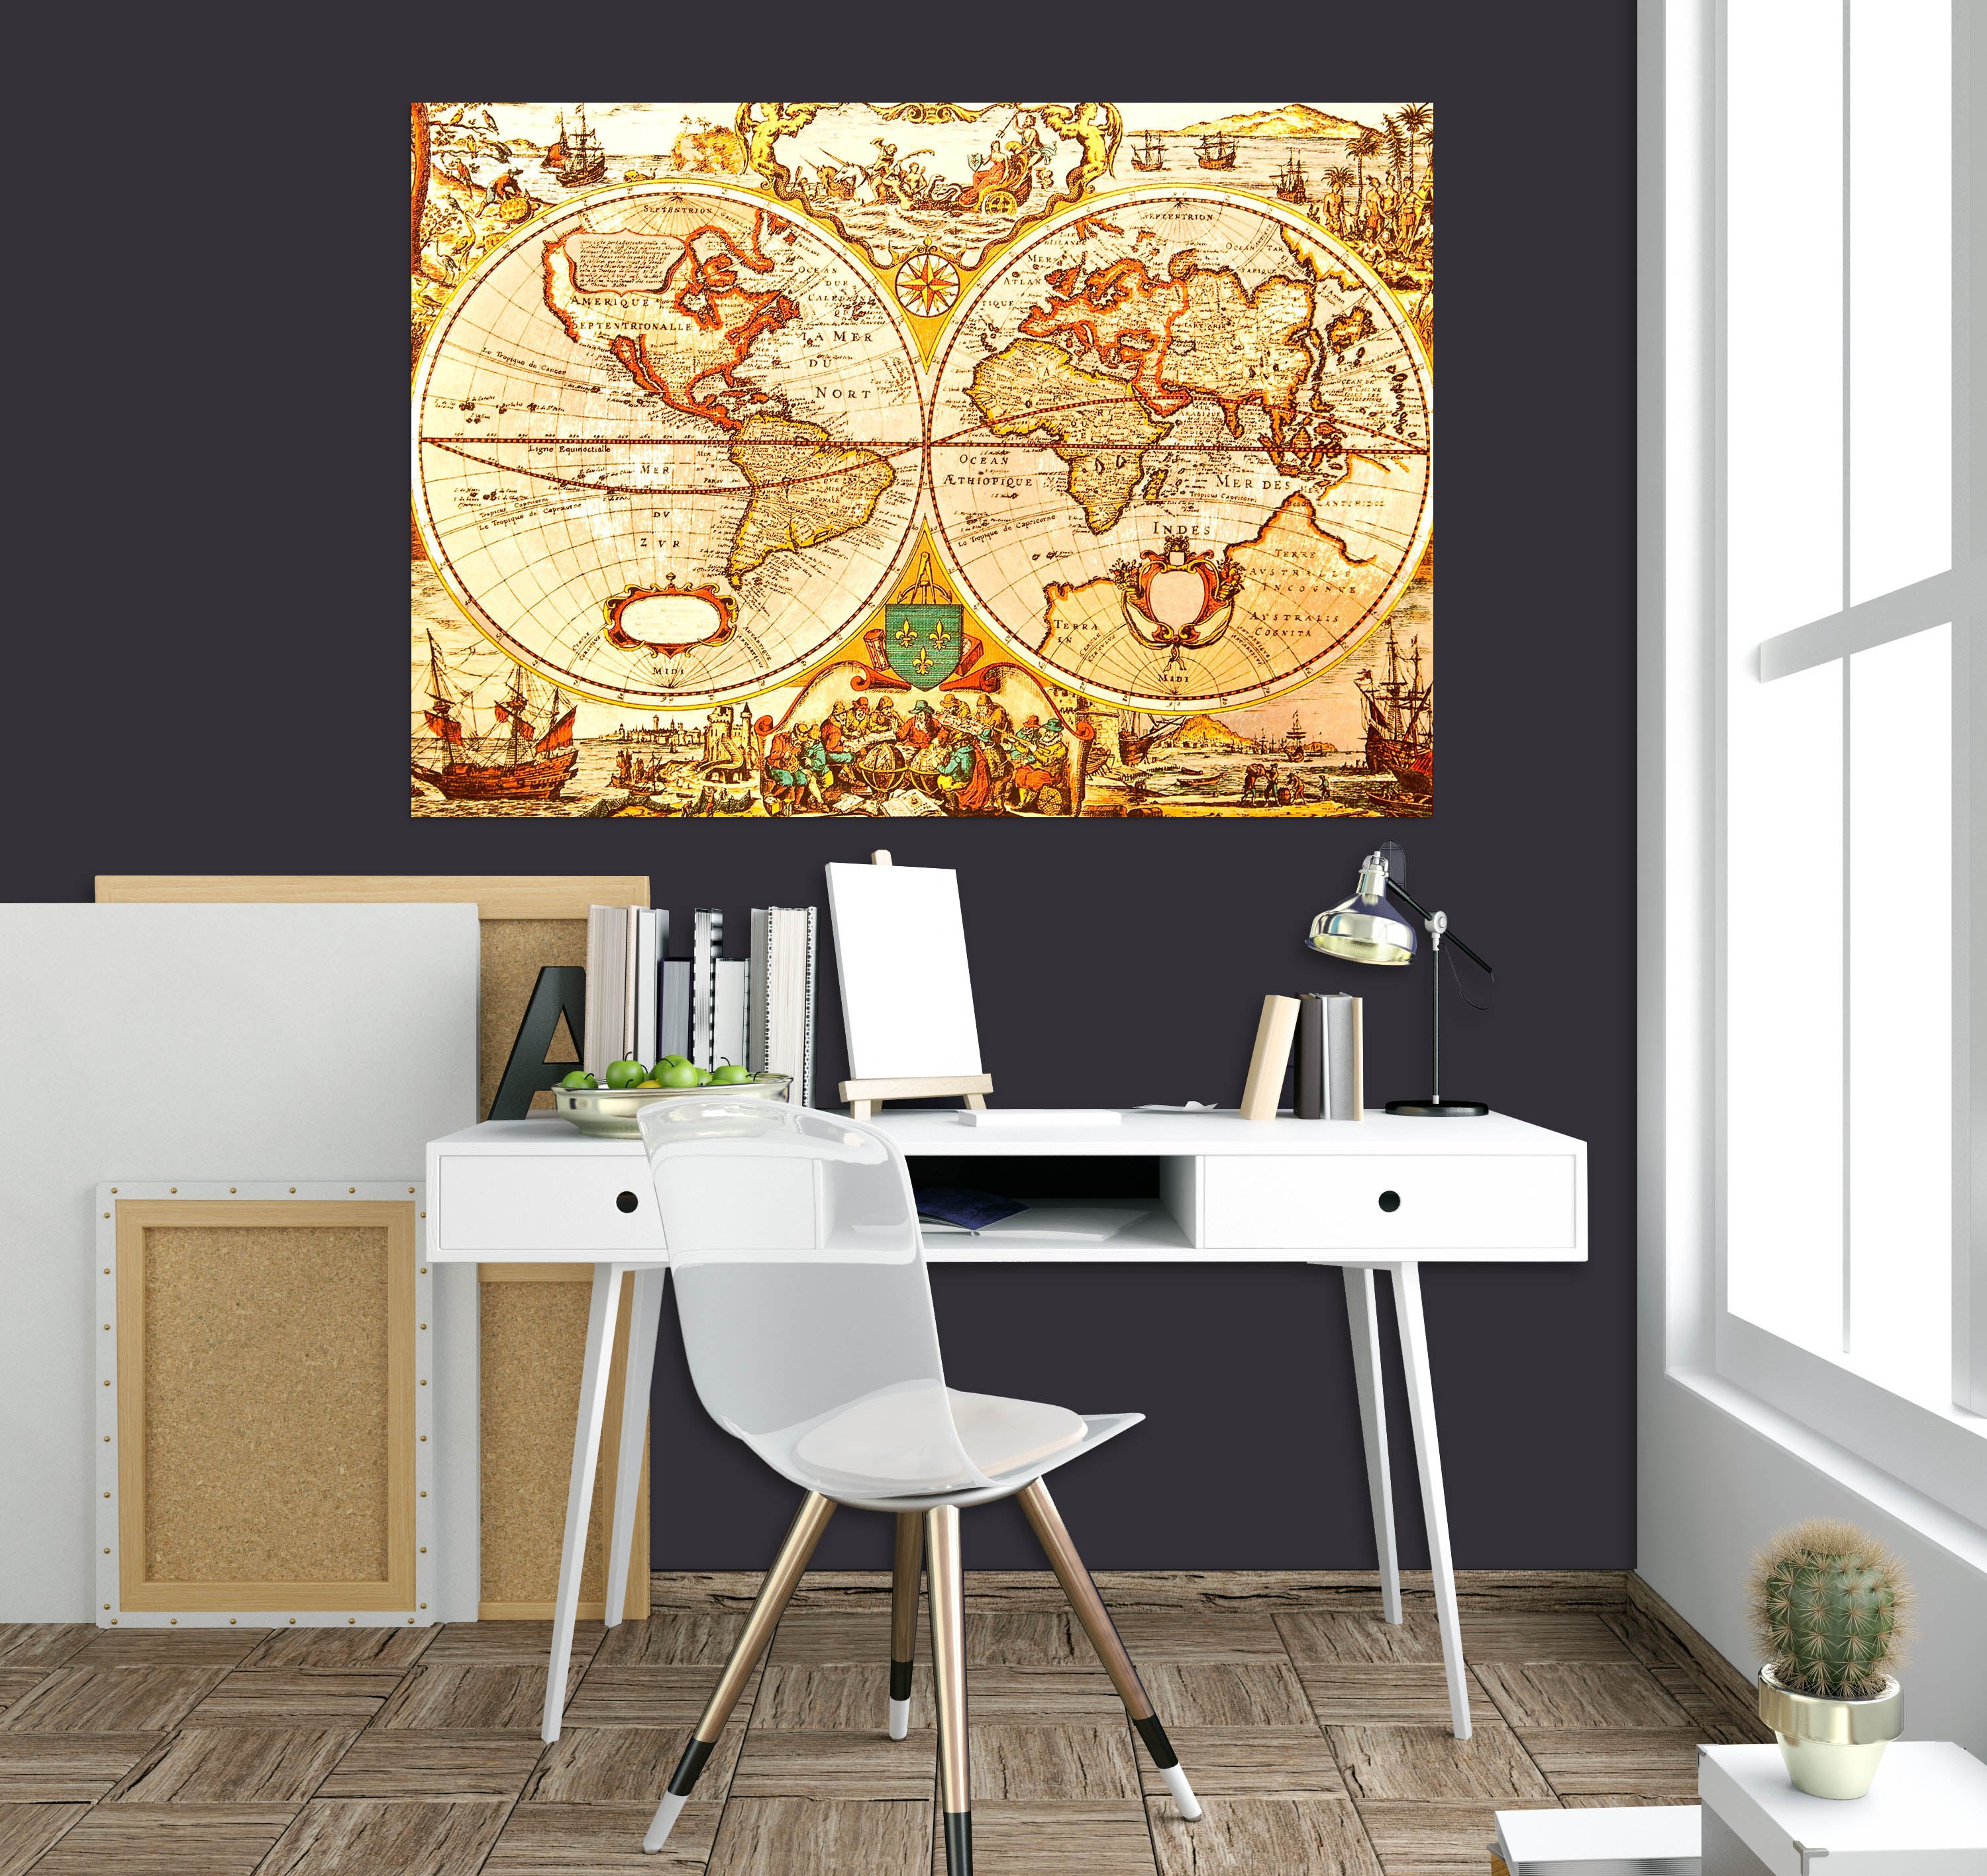 3D Golden World 123 World Map Wall Sticker